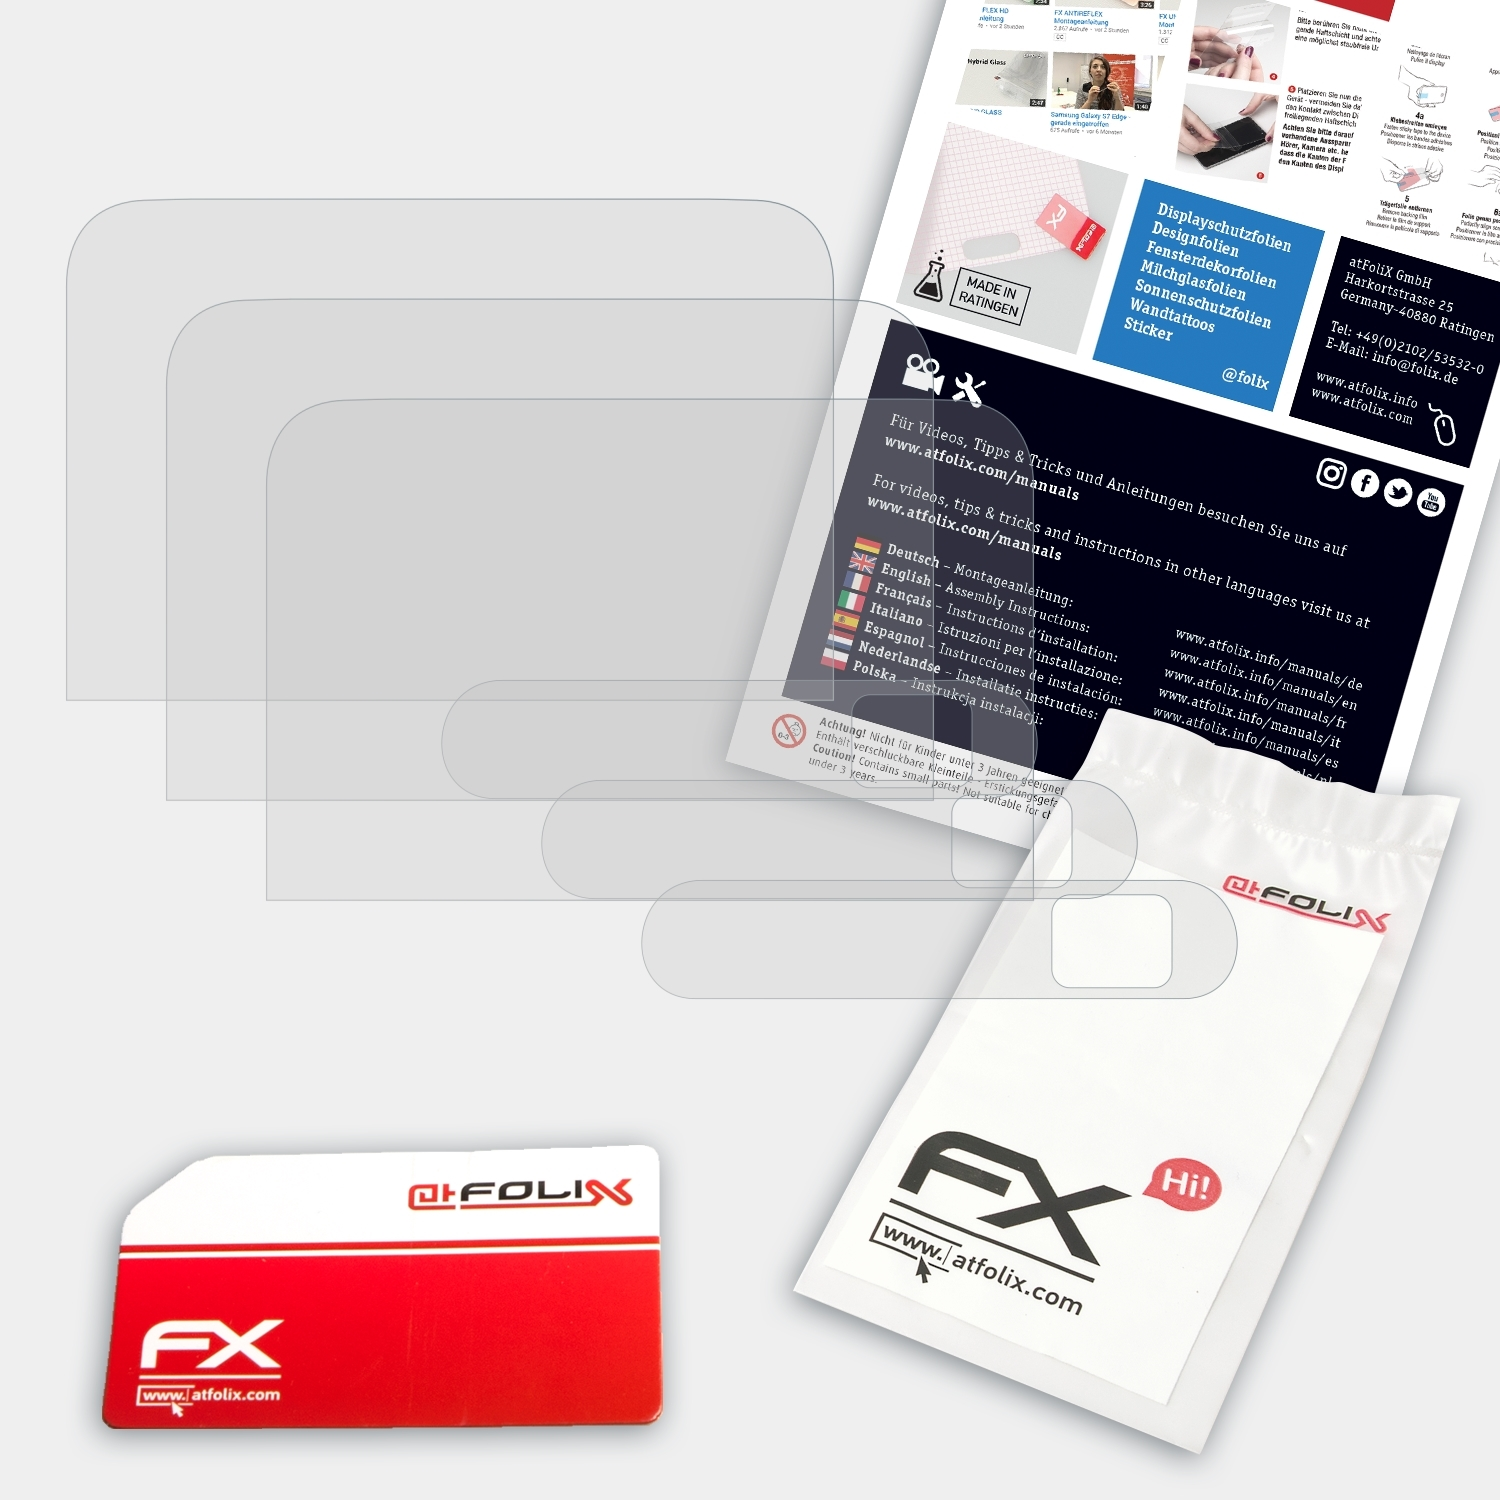 ATFOLIX 3x FX-Antireflex Displayschutz(für ZTE Spro 2)